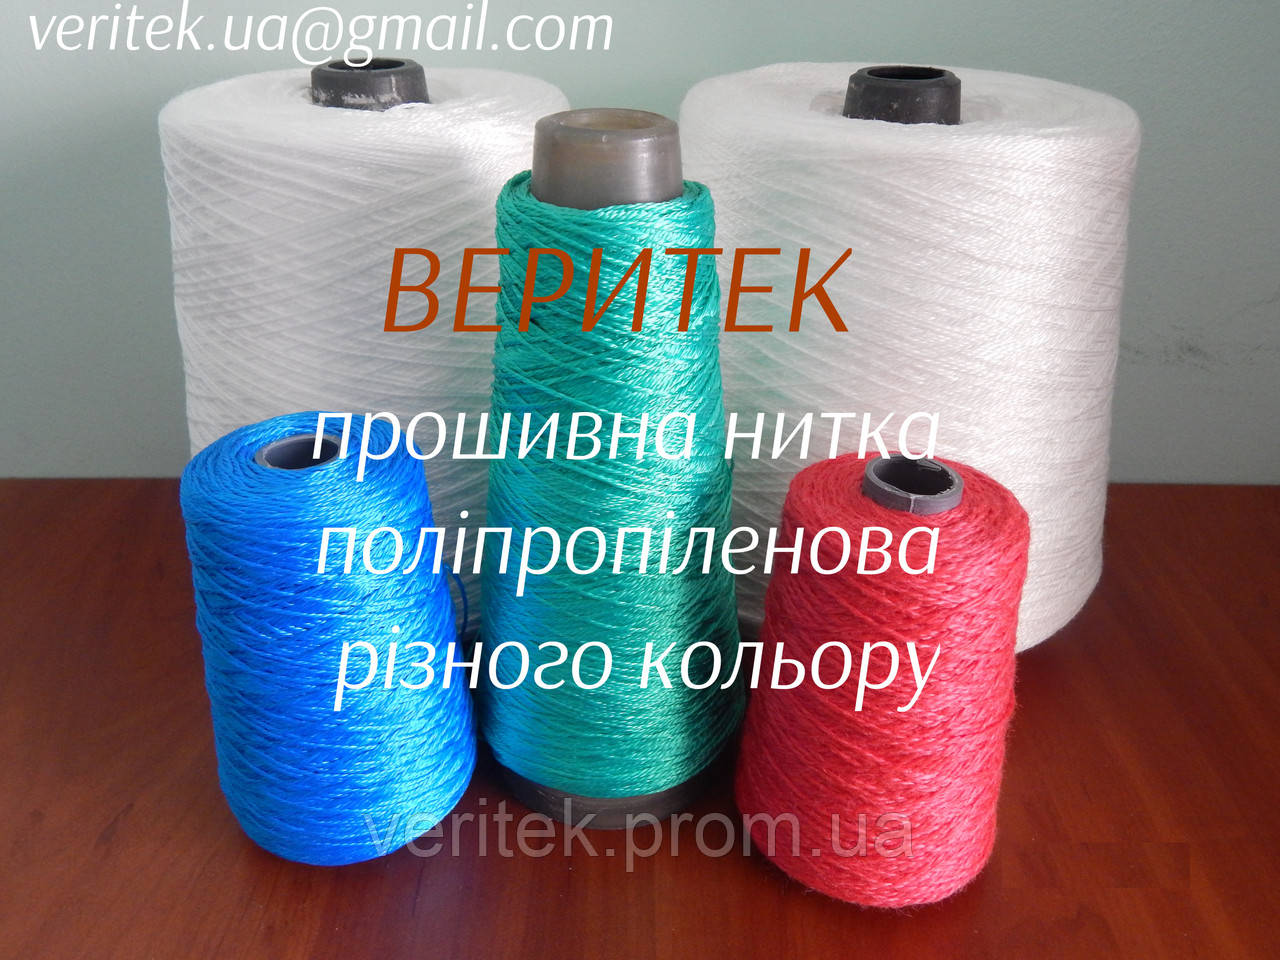 Прошивна нитка поліпропіленова різного кольору  (доступні під замовлення на сайті veritek.prom.ua або за тел.0675721597)